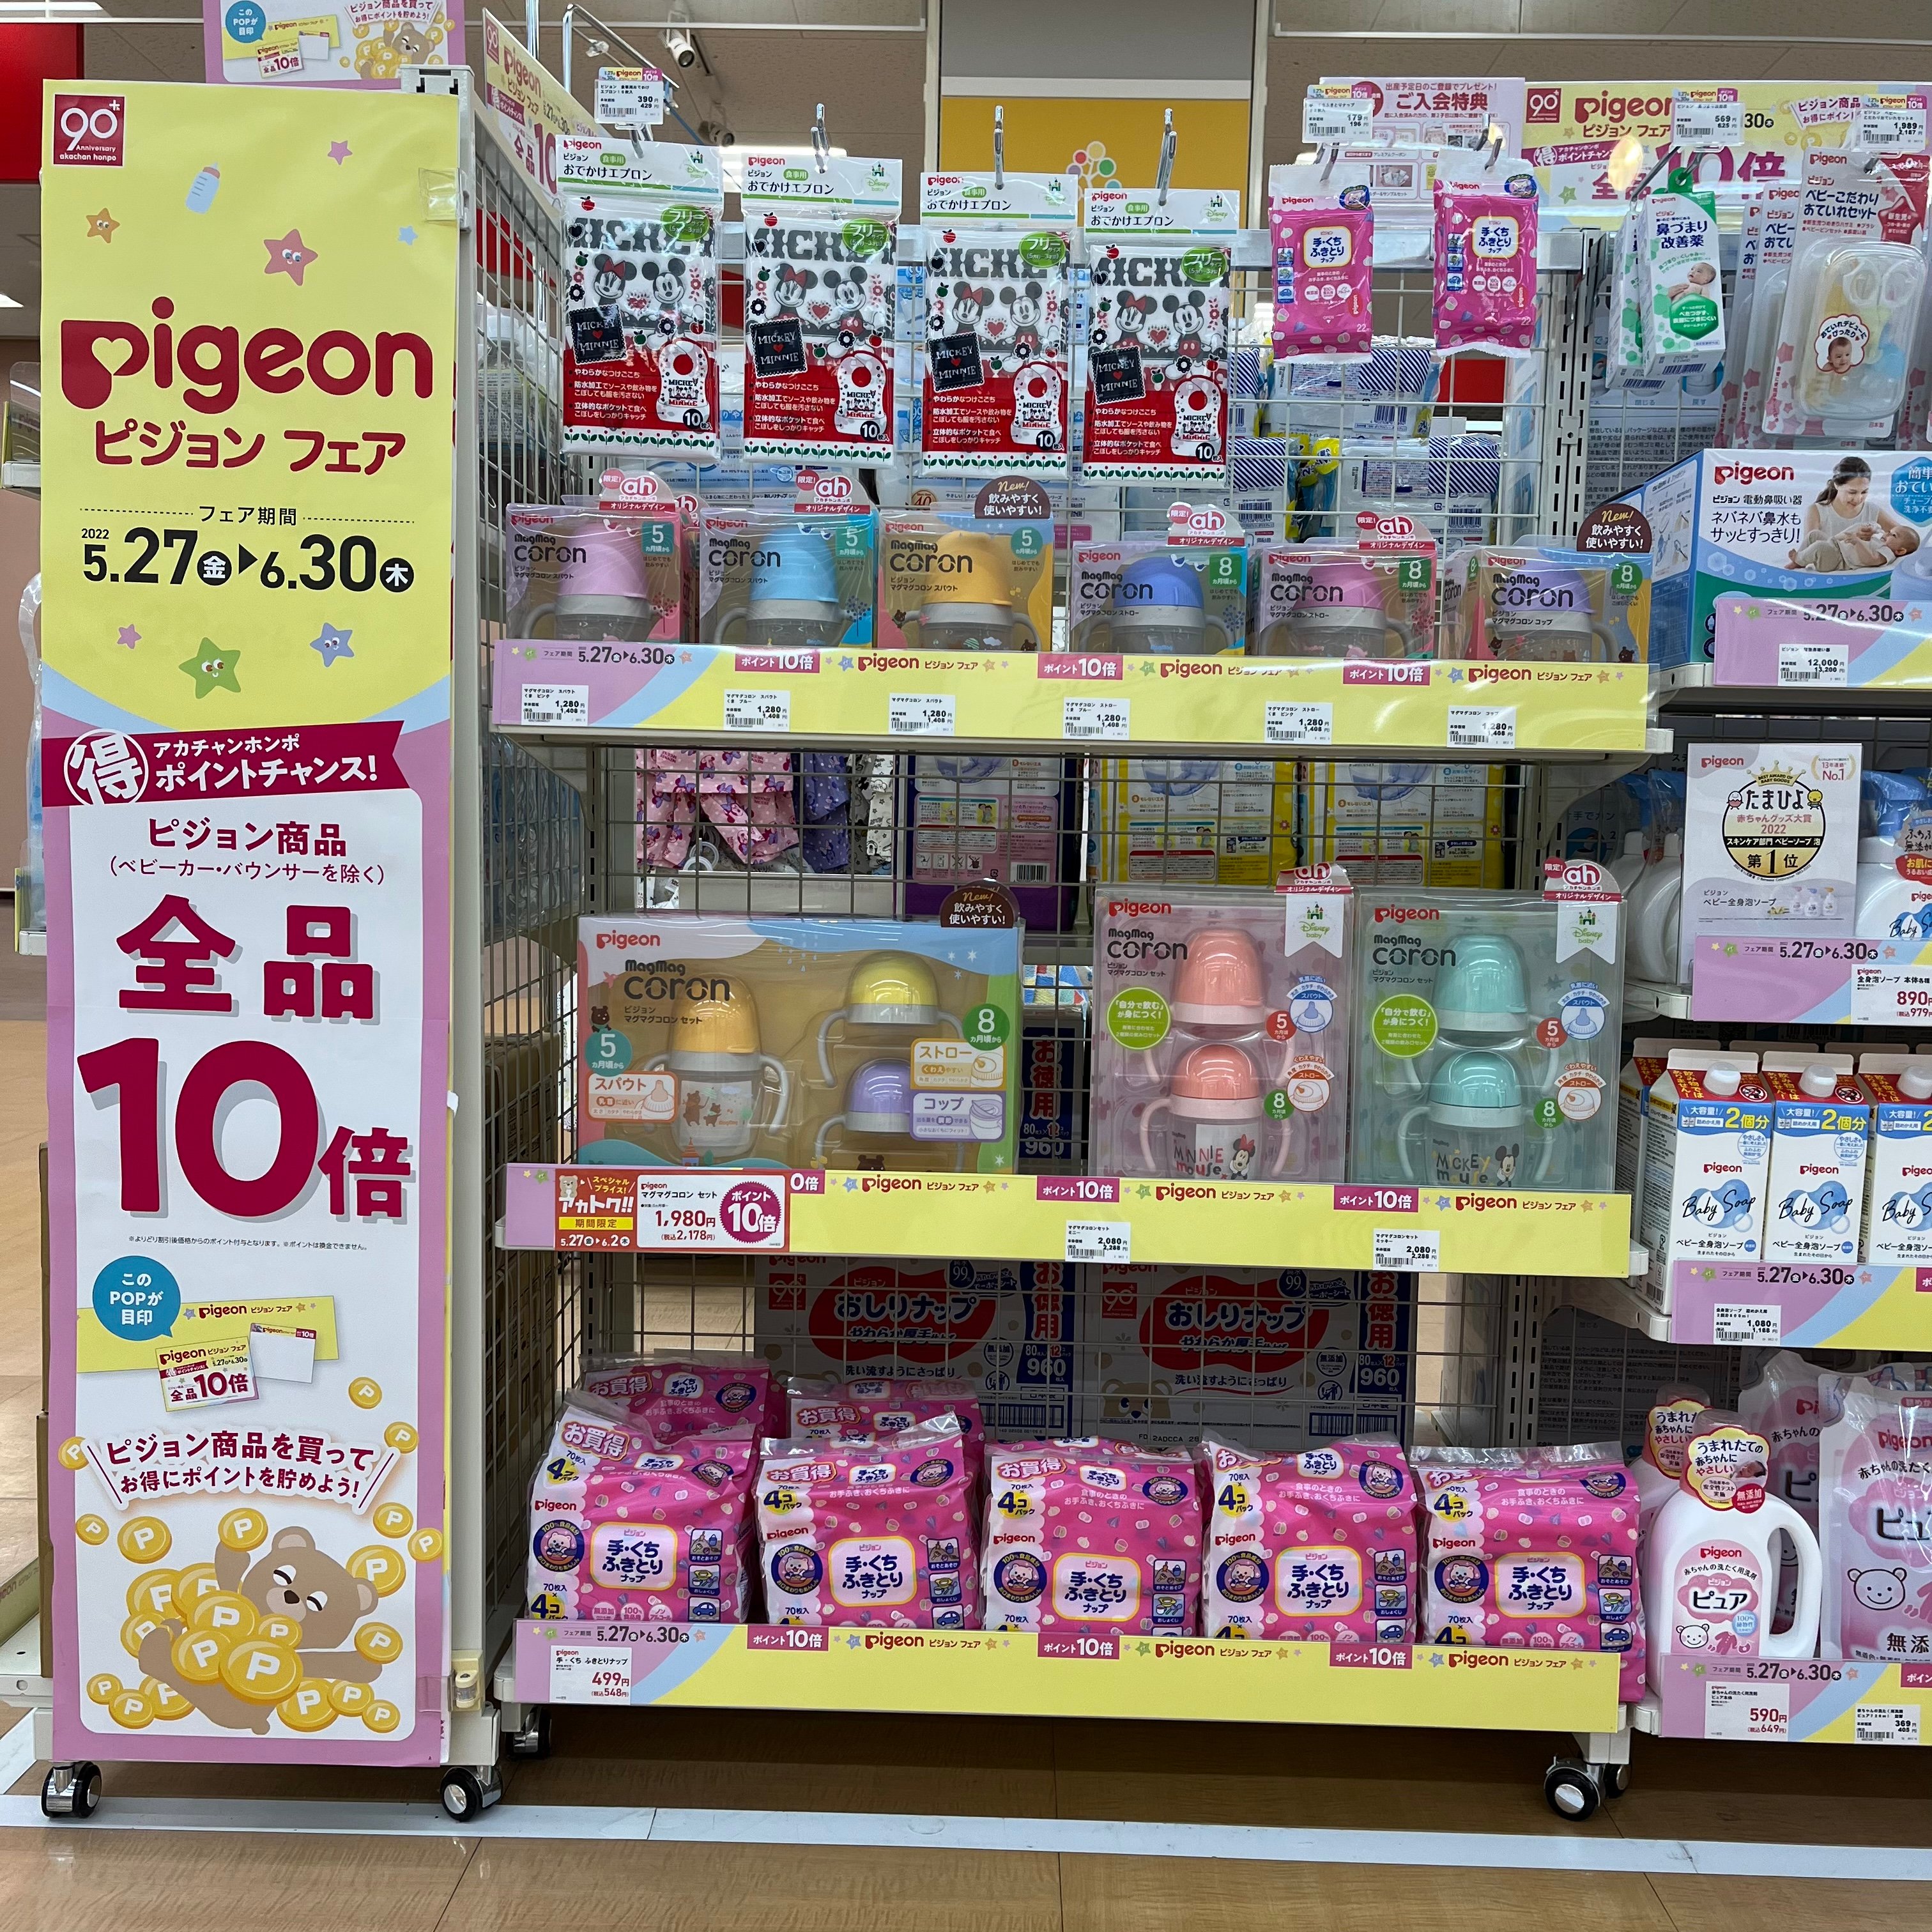 pigeonフェア5/27(金)～6/30(木）
pigeonの商品が今なら全品ポイント10倍☆☆
この機会にぜひ☆
詳しくはこちらをクリック☆